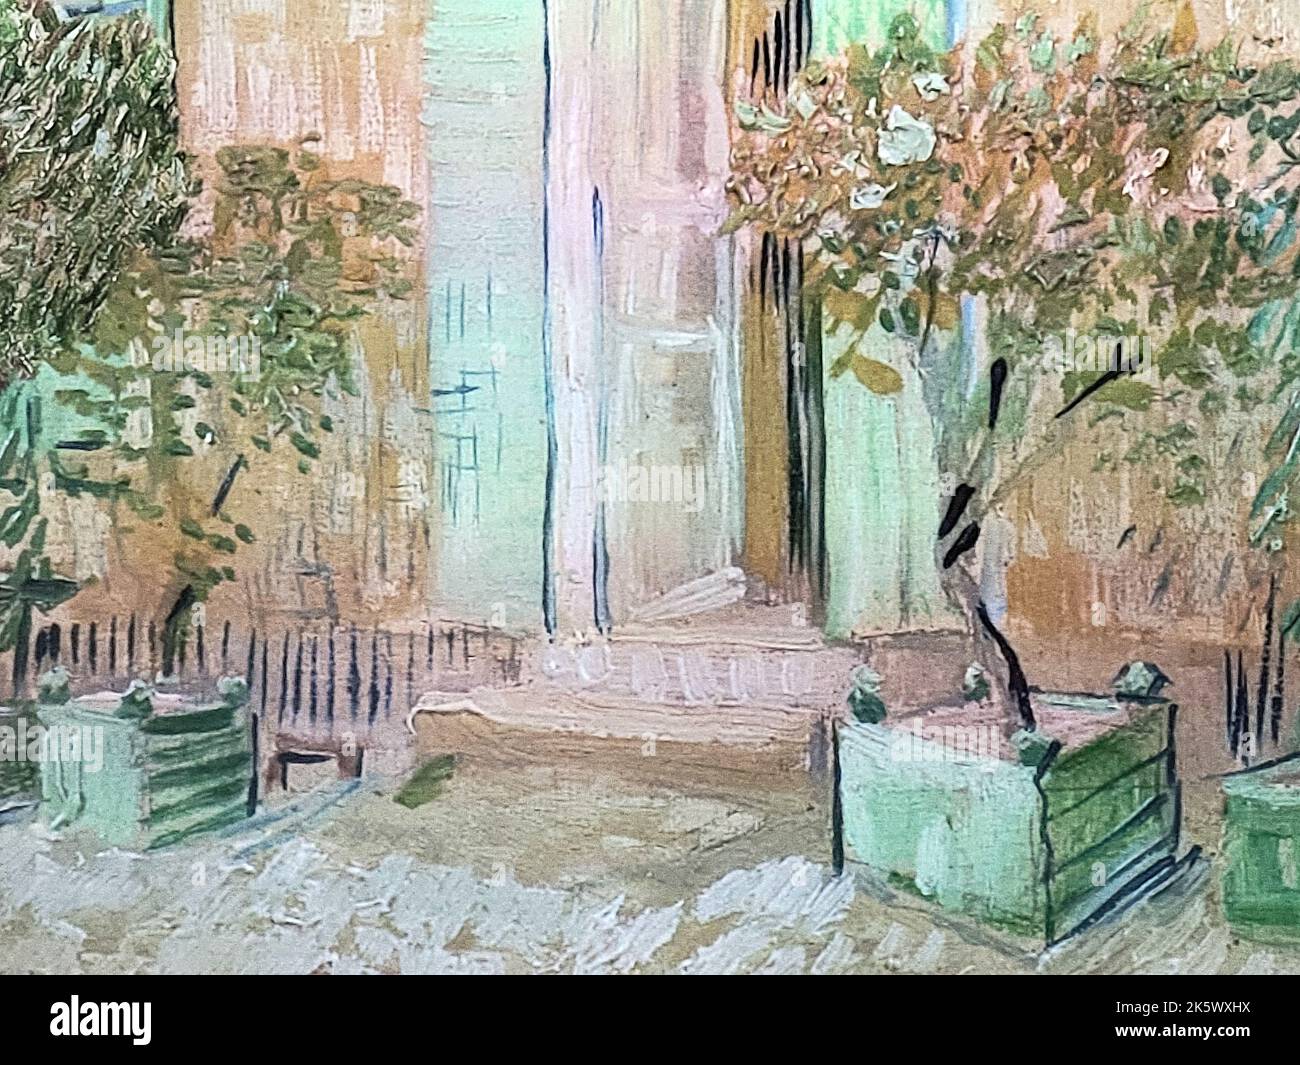 Arte impresionista recortado de una puerta con árboles en macetas Foto de stock